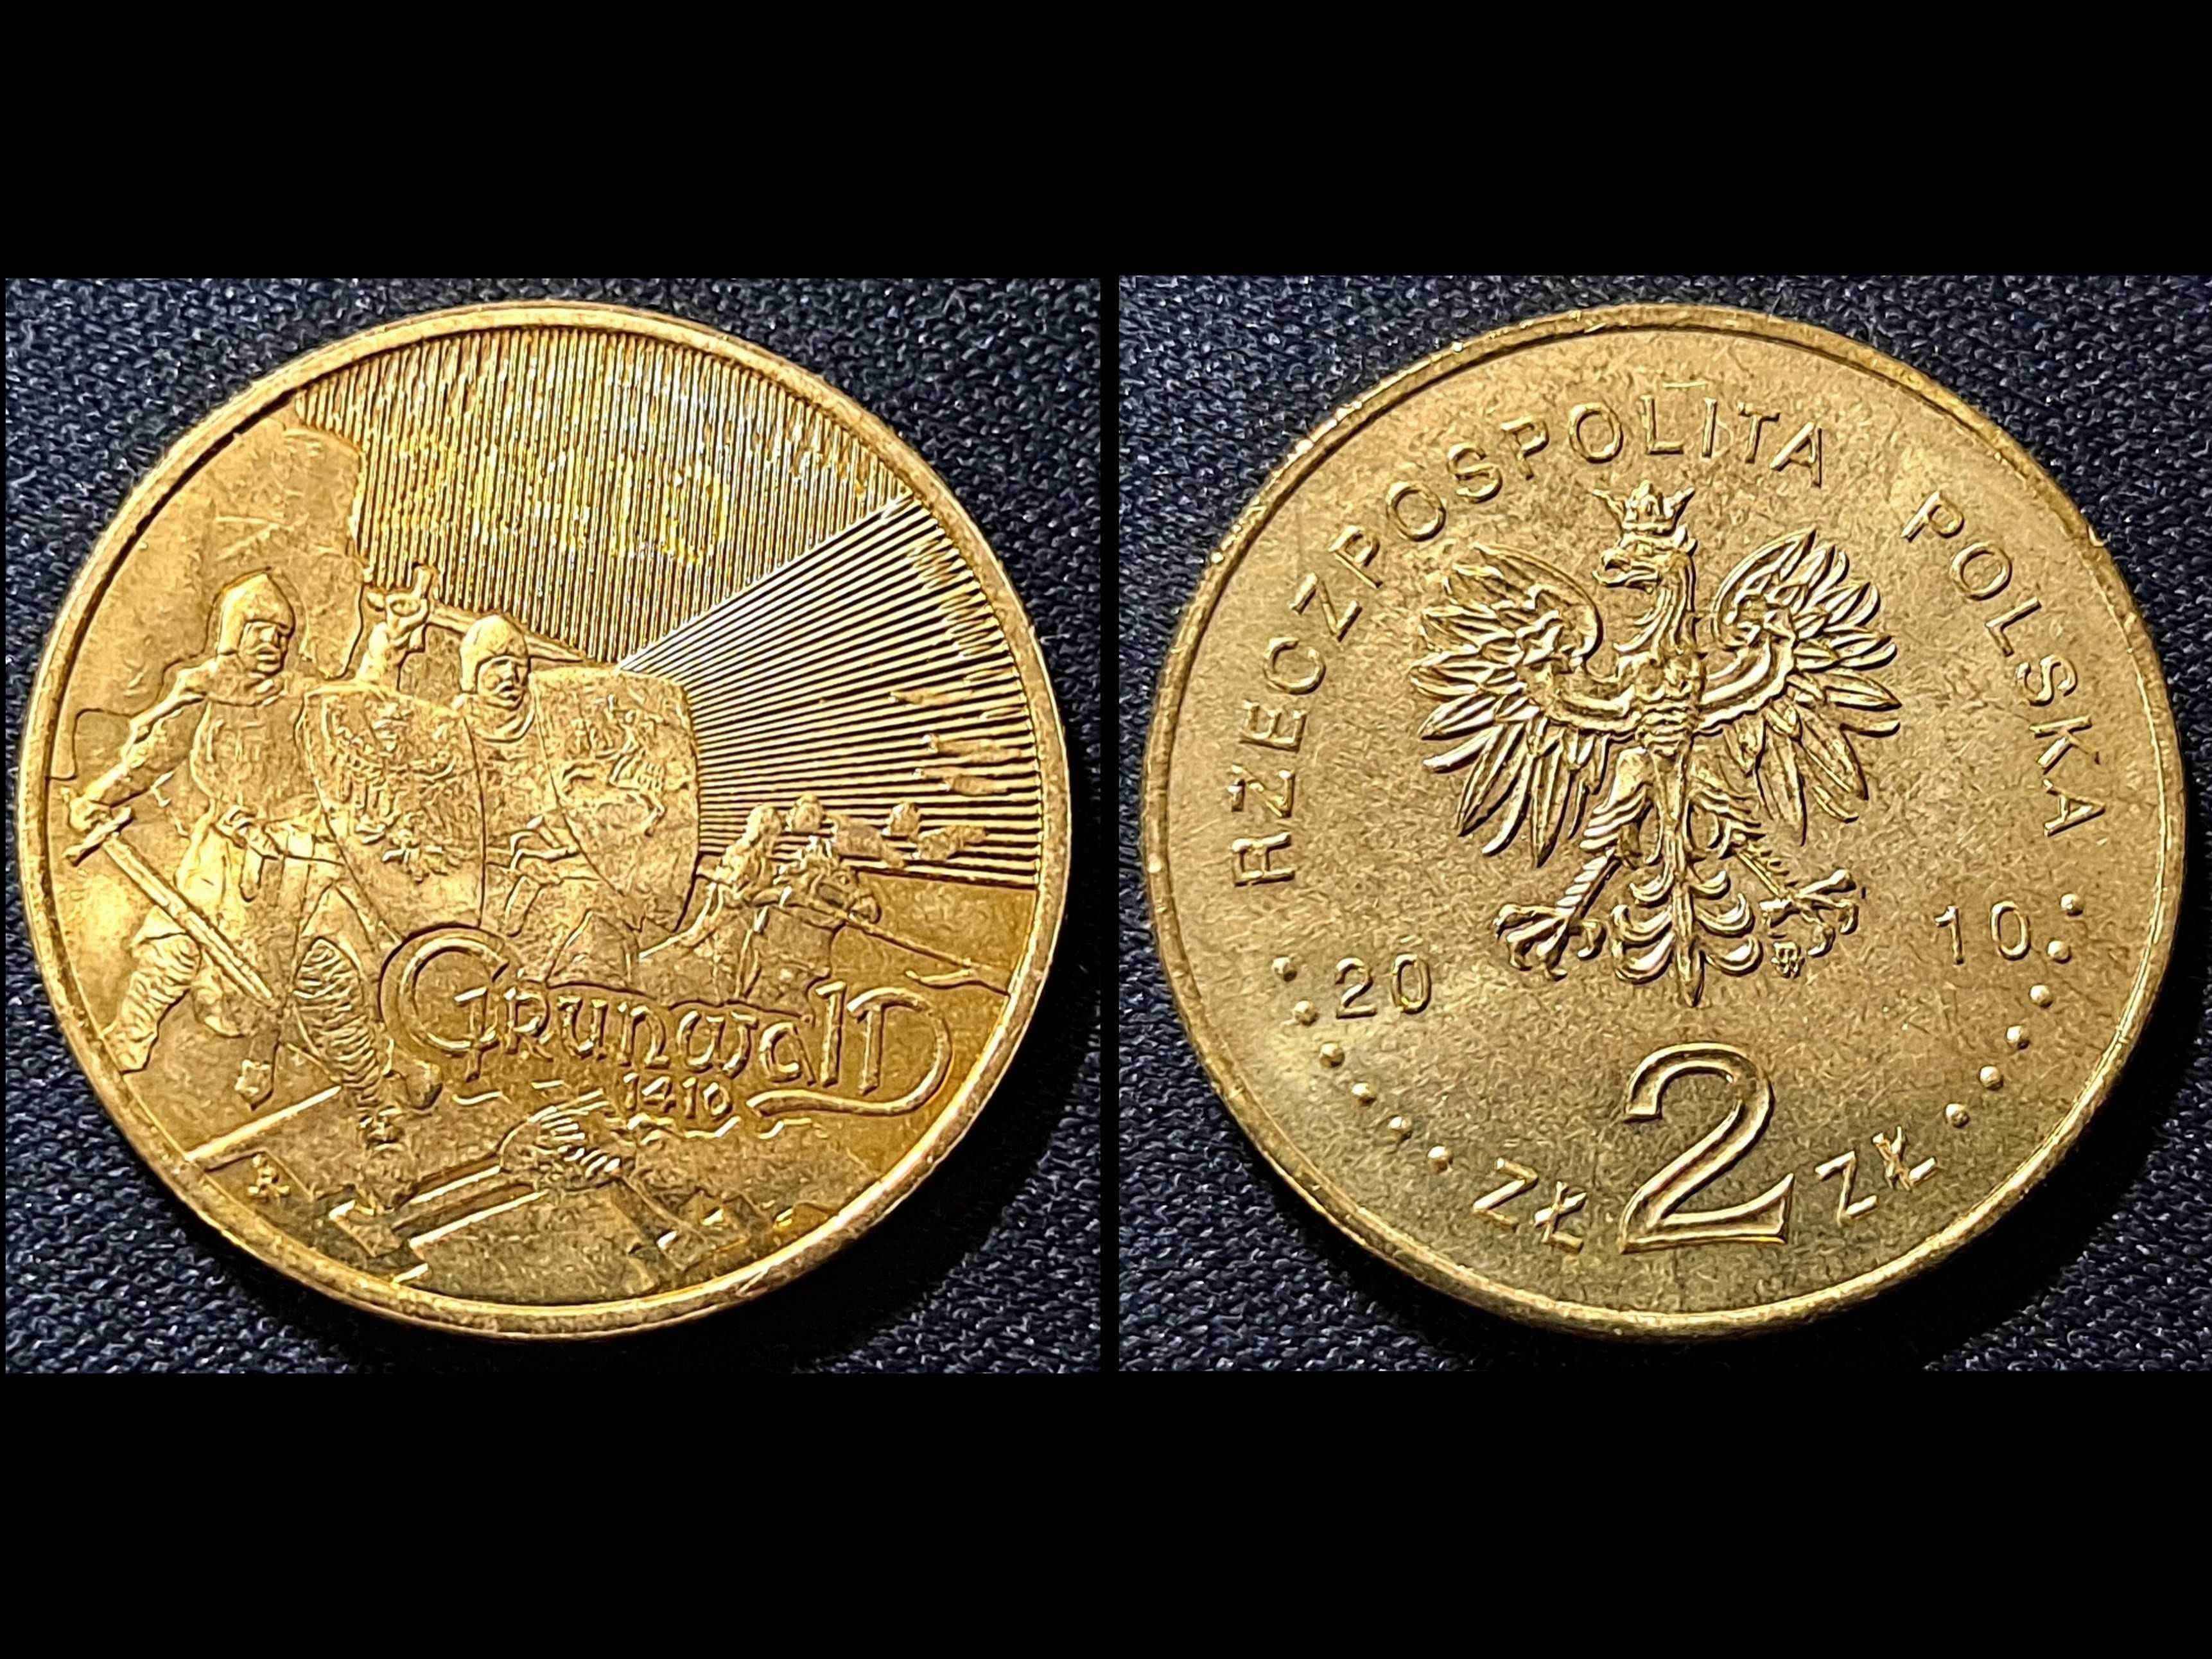 2 złote - Nordic Gold - Bitwa pod Grunwaldem - rocznik 2010